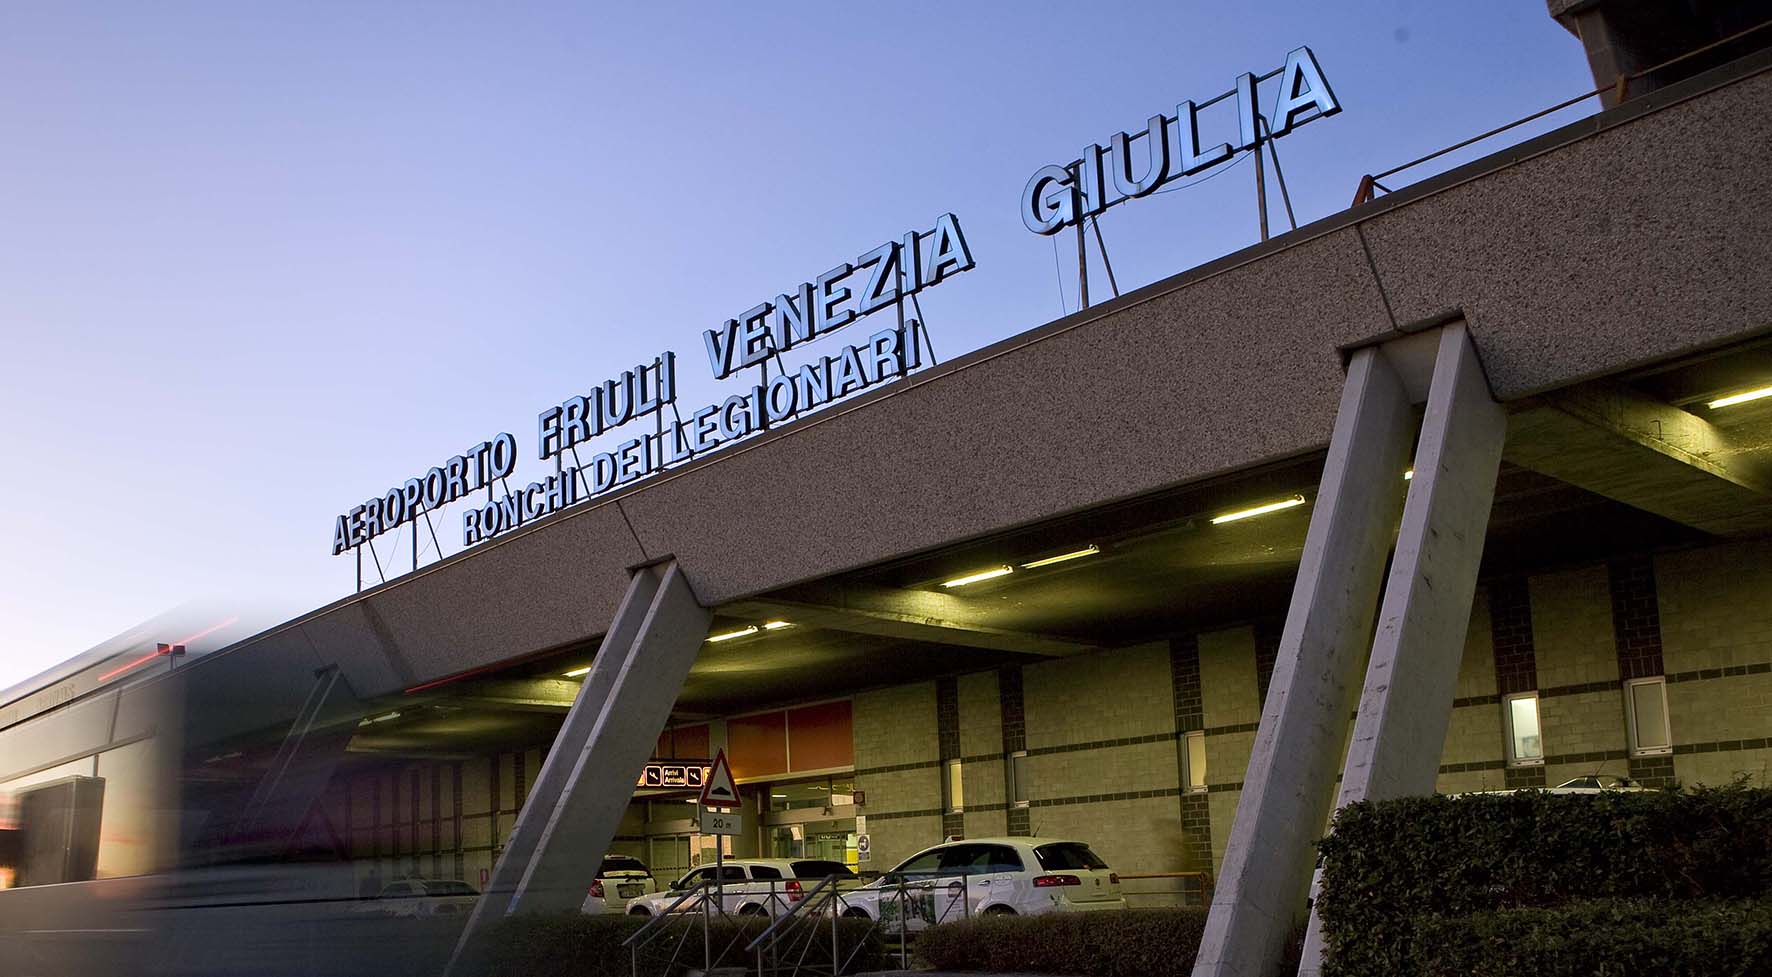 Aeroporto Trieste Ronchi legionari Area esterna aerostazione